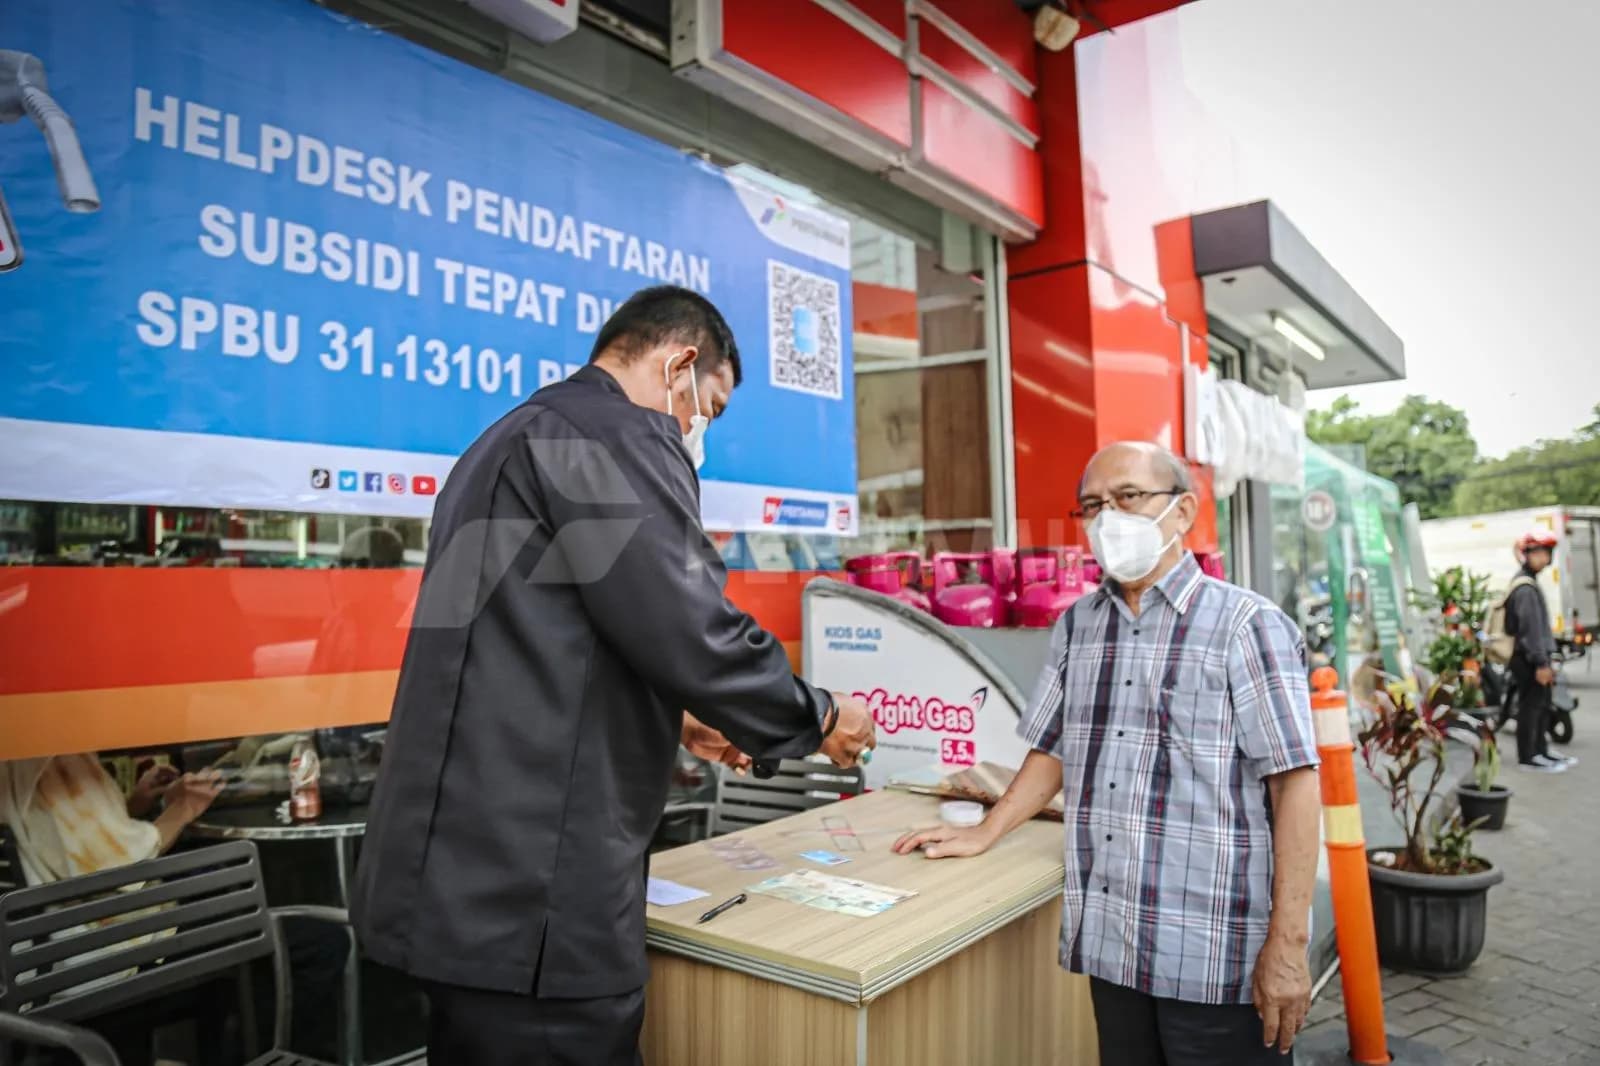 Program Subsidi Tepat Bangka Belitung Tembus 45 Ribu Pendaftar, Pertamina Apresiasi Masyarakat Dukung Penyaluran BBM Tepat Sasaran